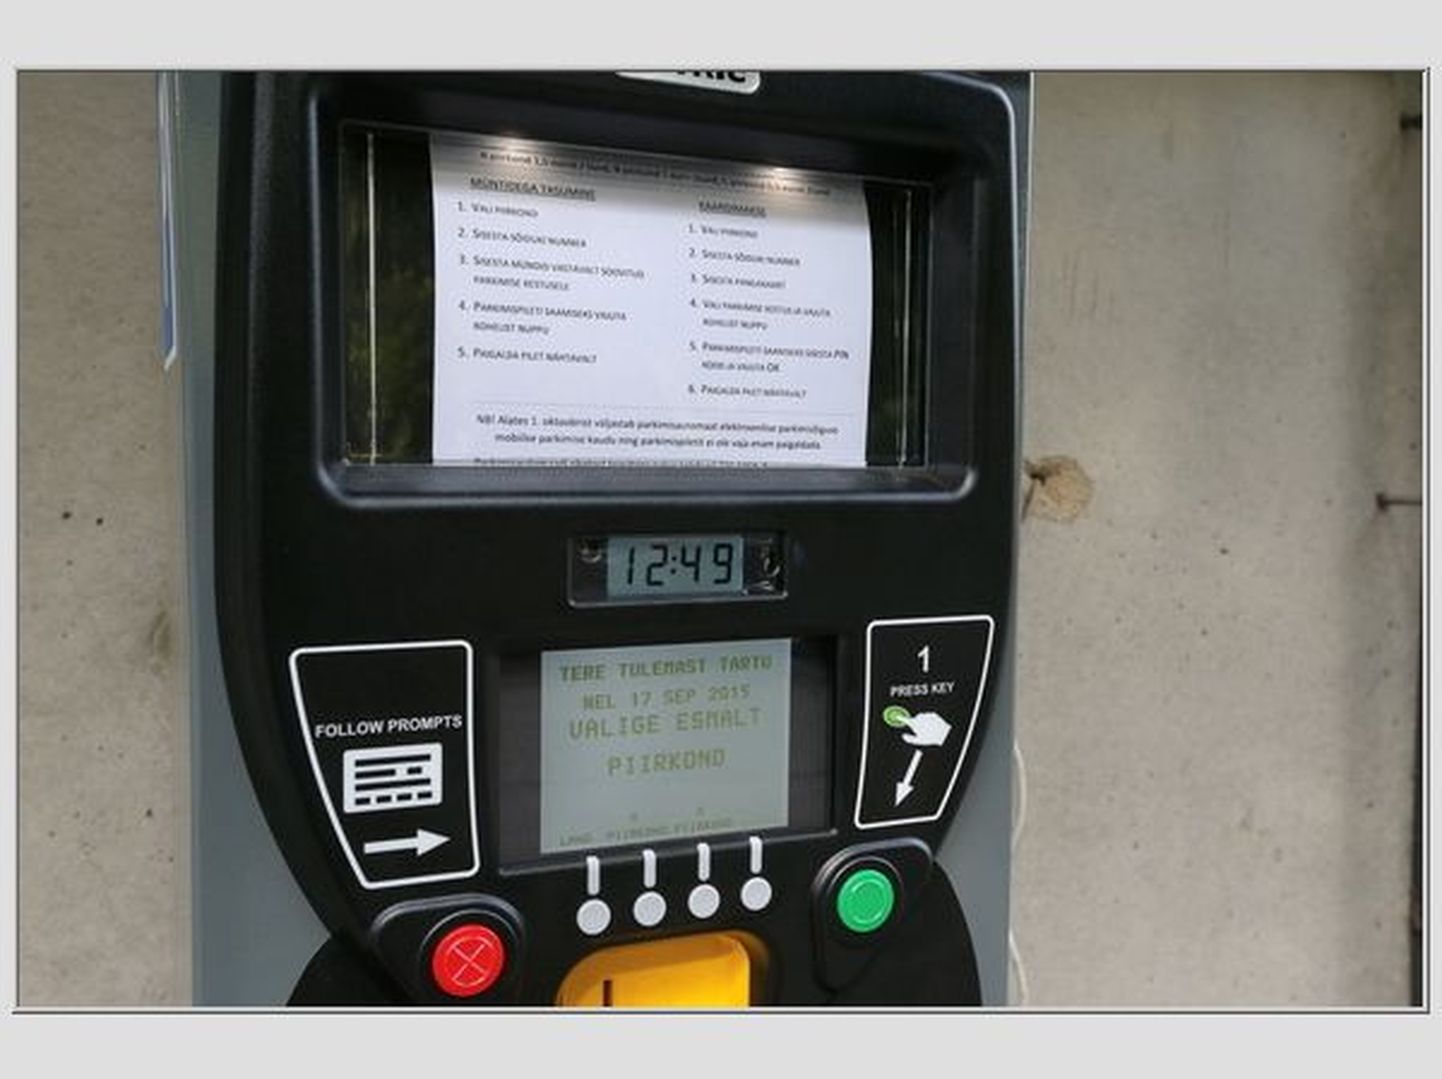 Vastsed parkimisautomaadid saavad oktoobri alguseks selgemad kasutusjuhised.